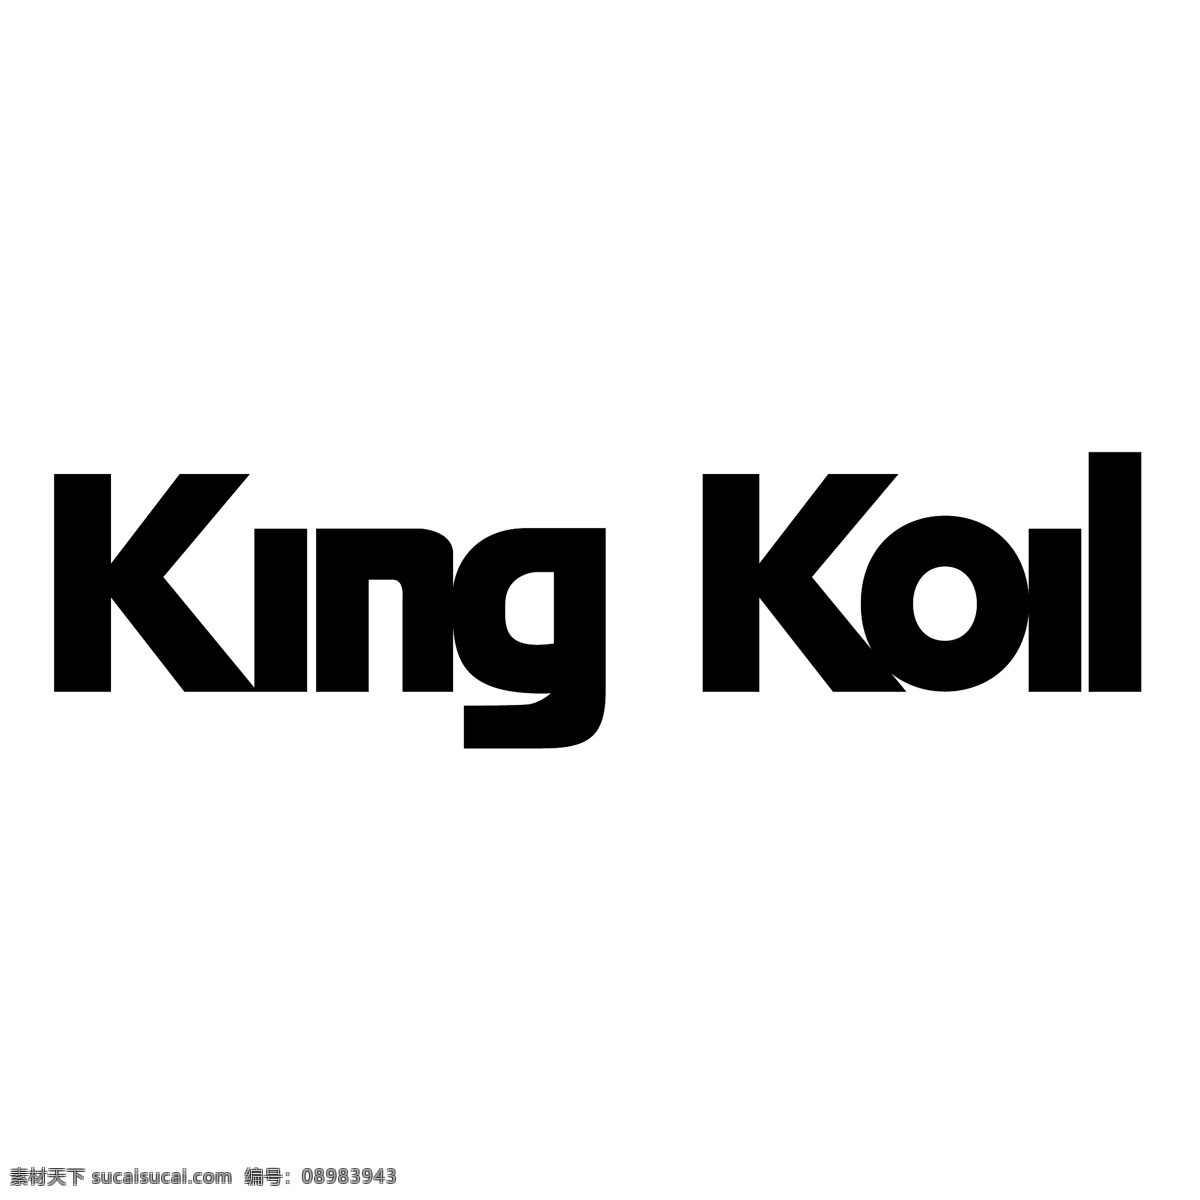 国王 矢量设计 金 金可儿 可儿 标志 爱 皇 健 矢量 图形 向量 标志金可儿 金可儿标志 免费 国王的国王 矢量图像 无载体 建筑家居